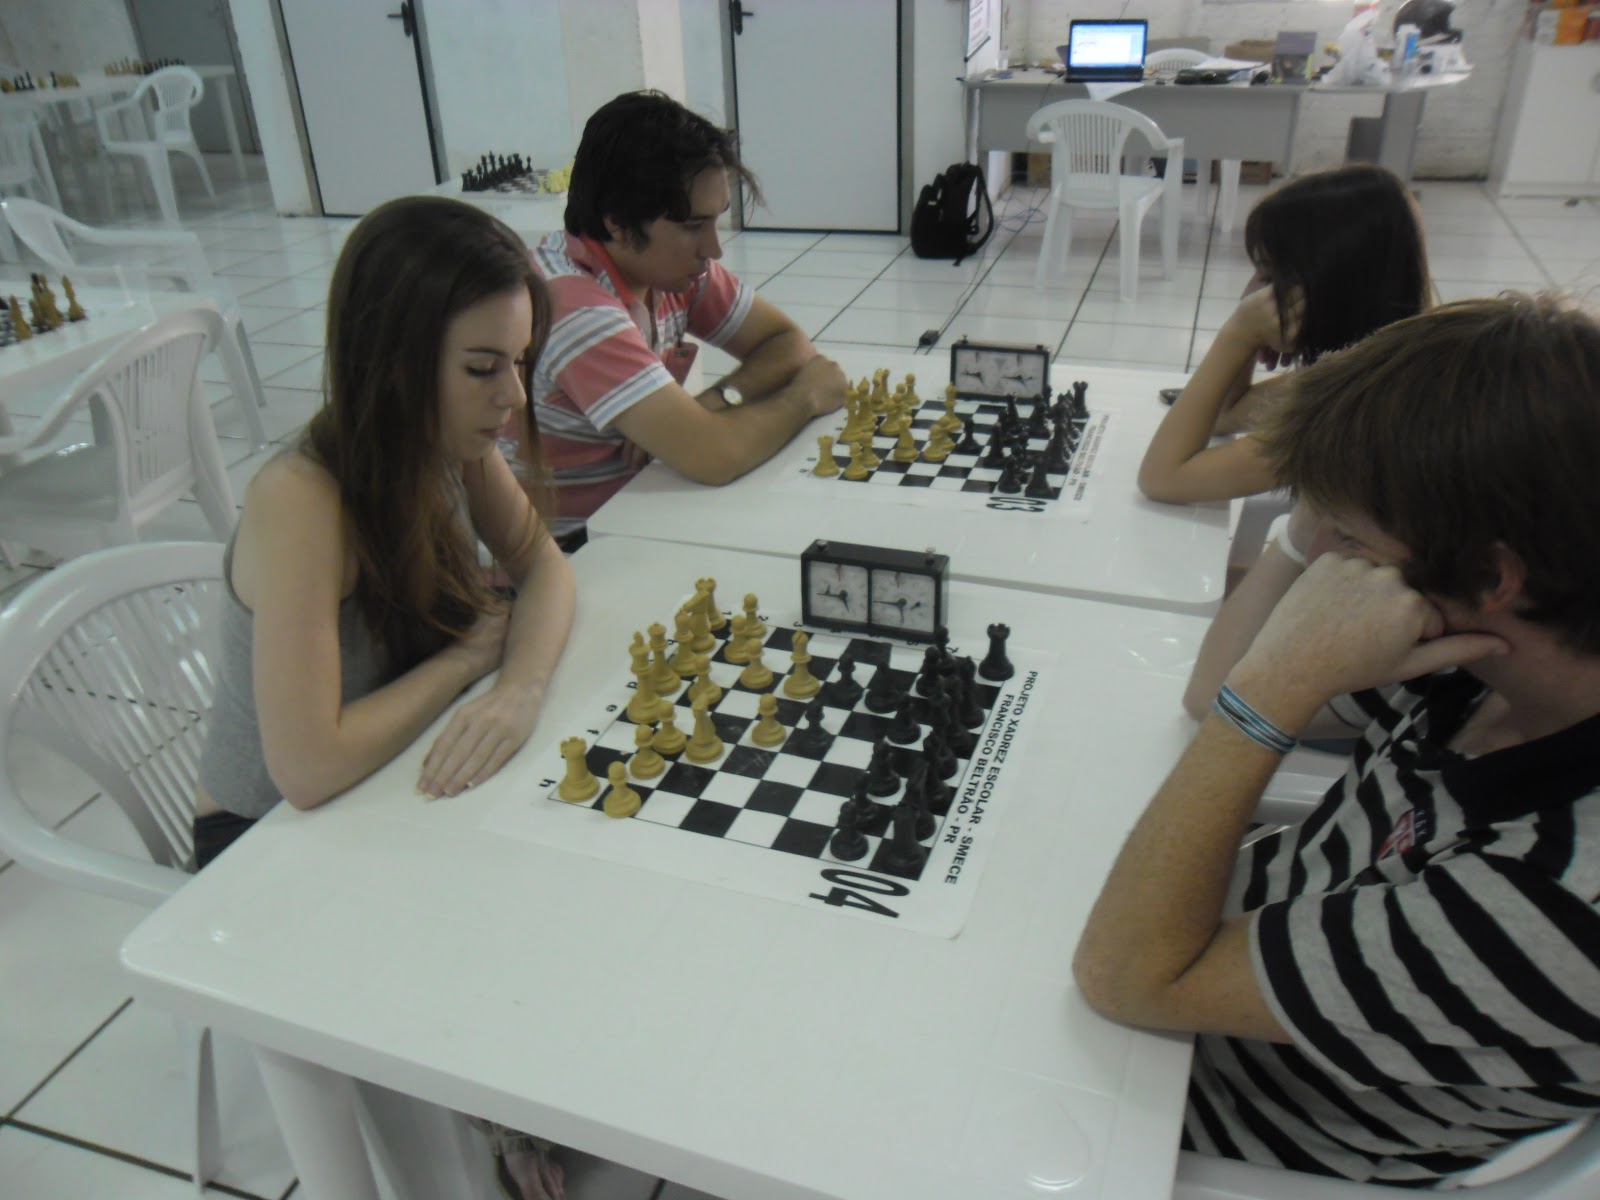 Floripa Chess Open - GM Neuris Delgado vence o Super Blitz - Xadrez Forte